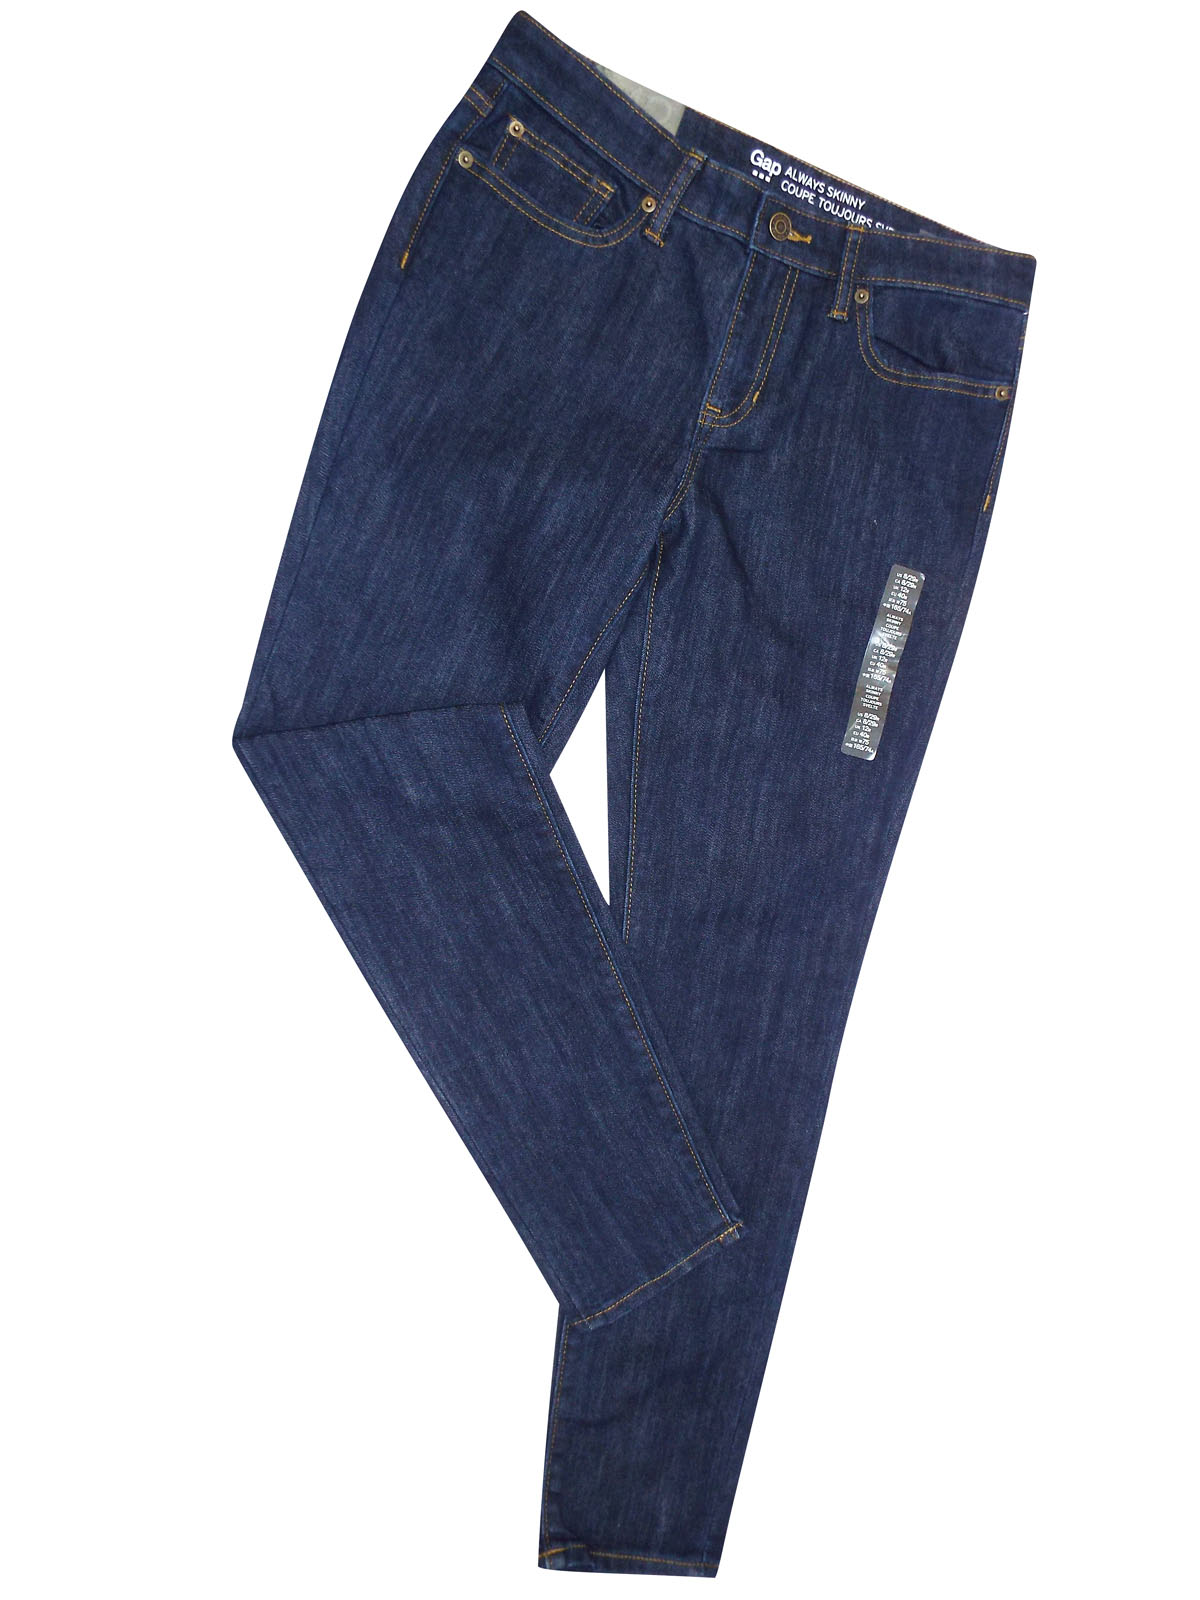 G4P INDIGO 5-Pocket Always Skinny Denim Jeans - Size 2 to 20 (Short